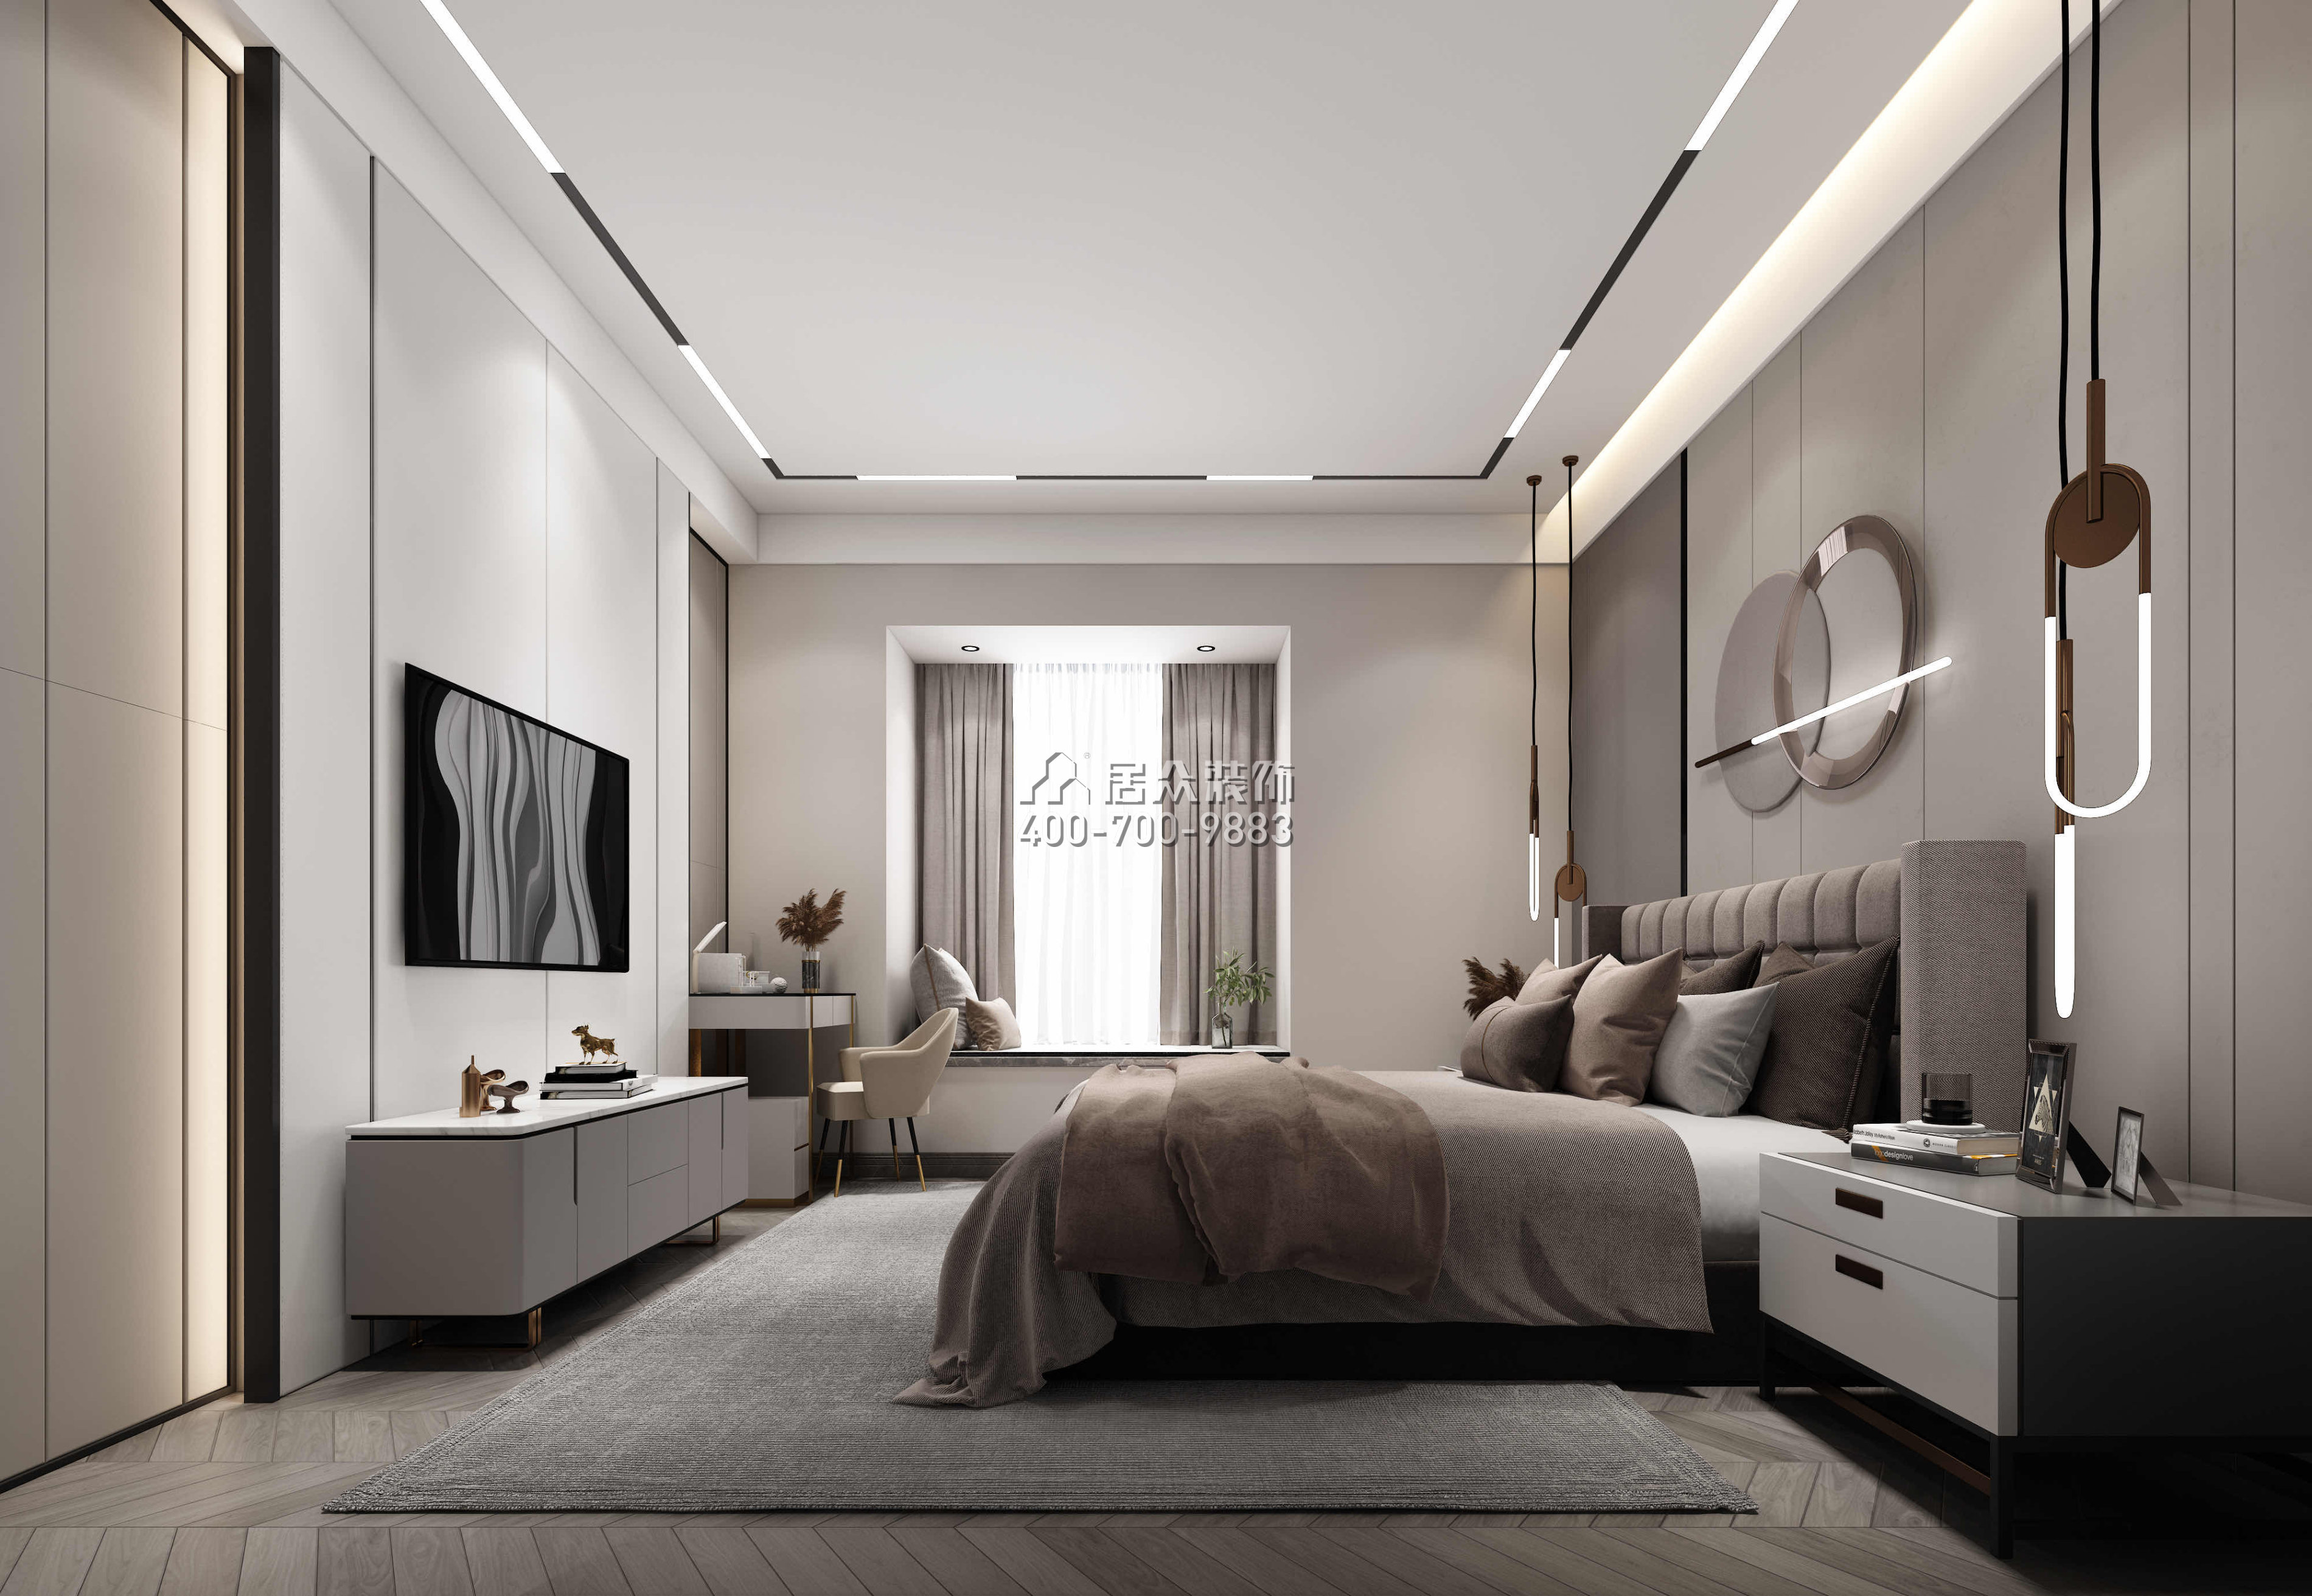 半島城邦二期168平方米現代簡約風格平層戶型臥室裝修效果圖